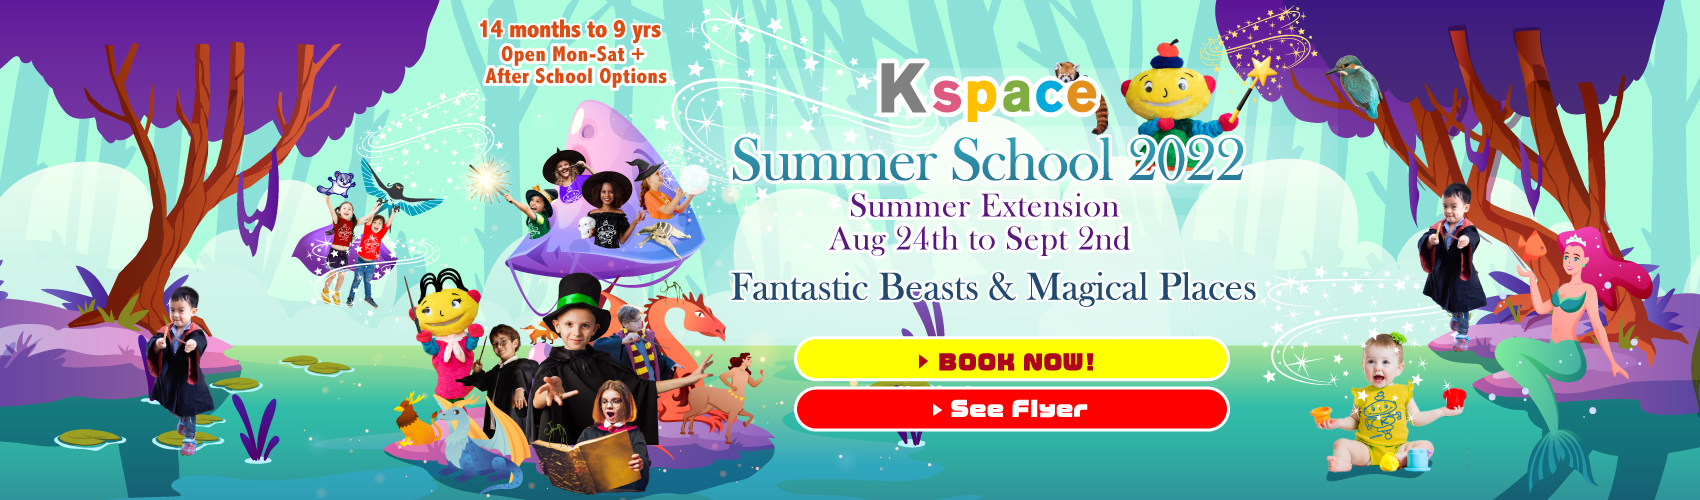 Kspace Summer School 2022